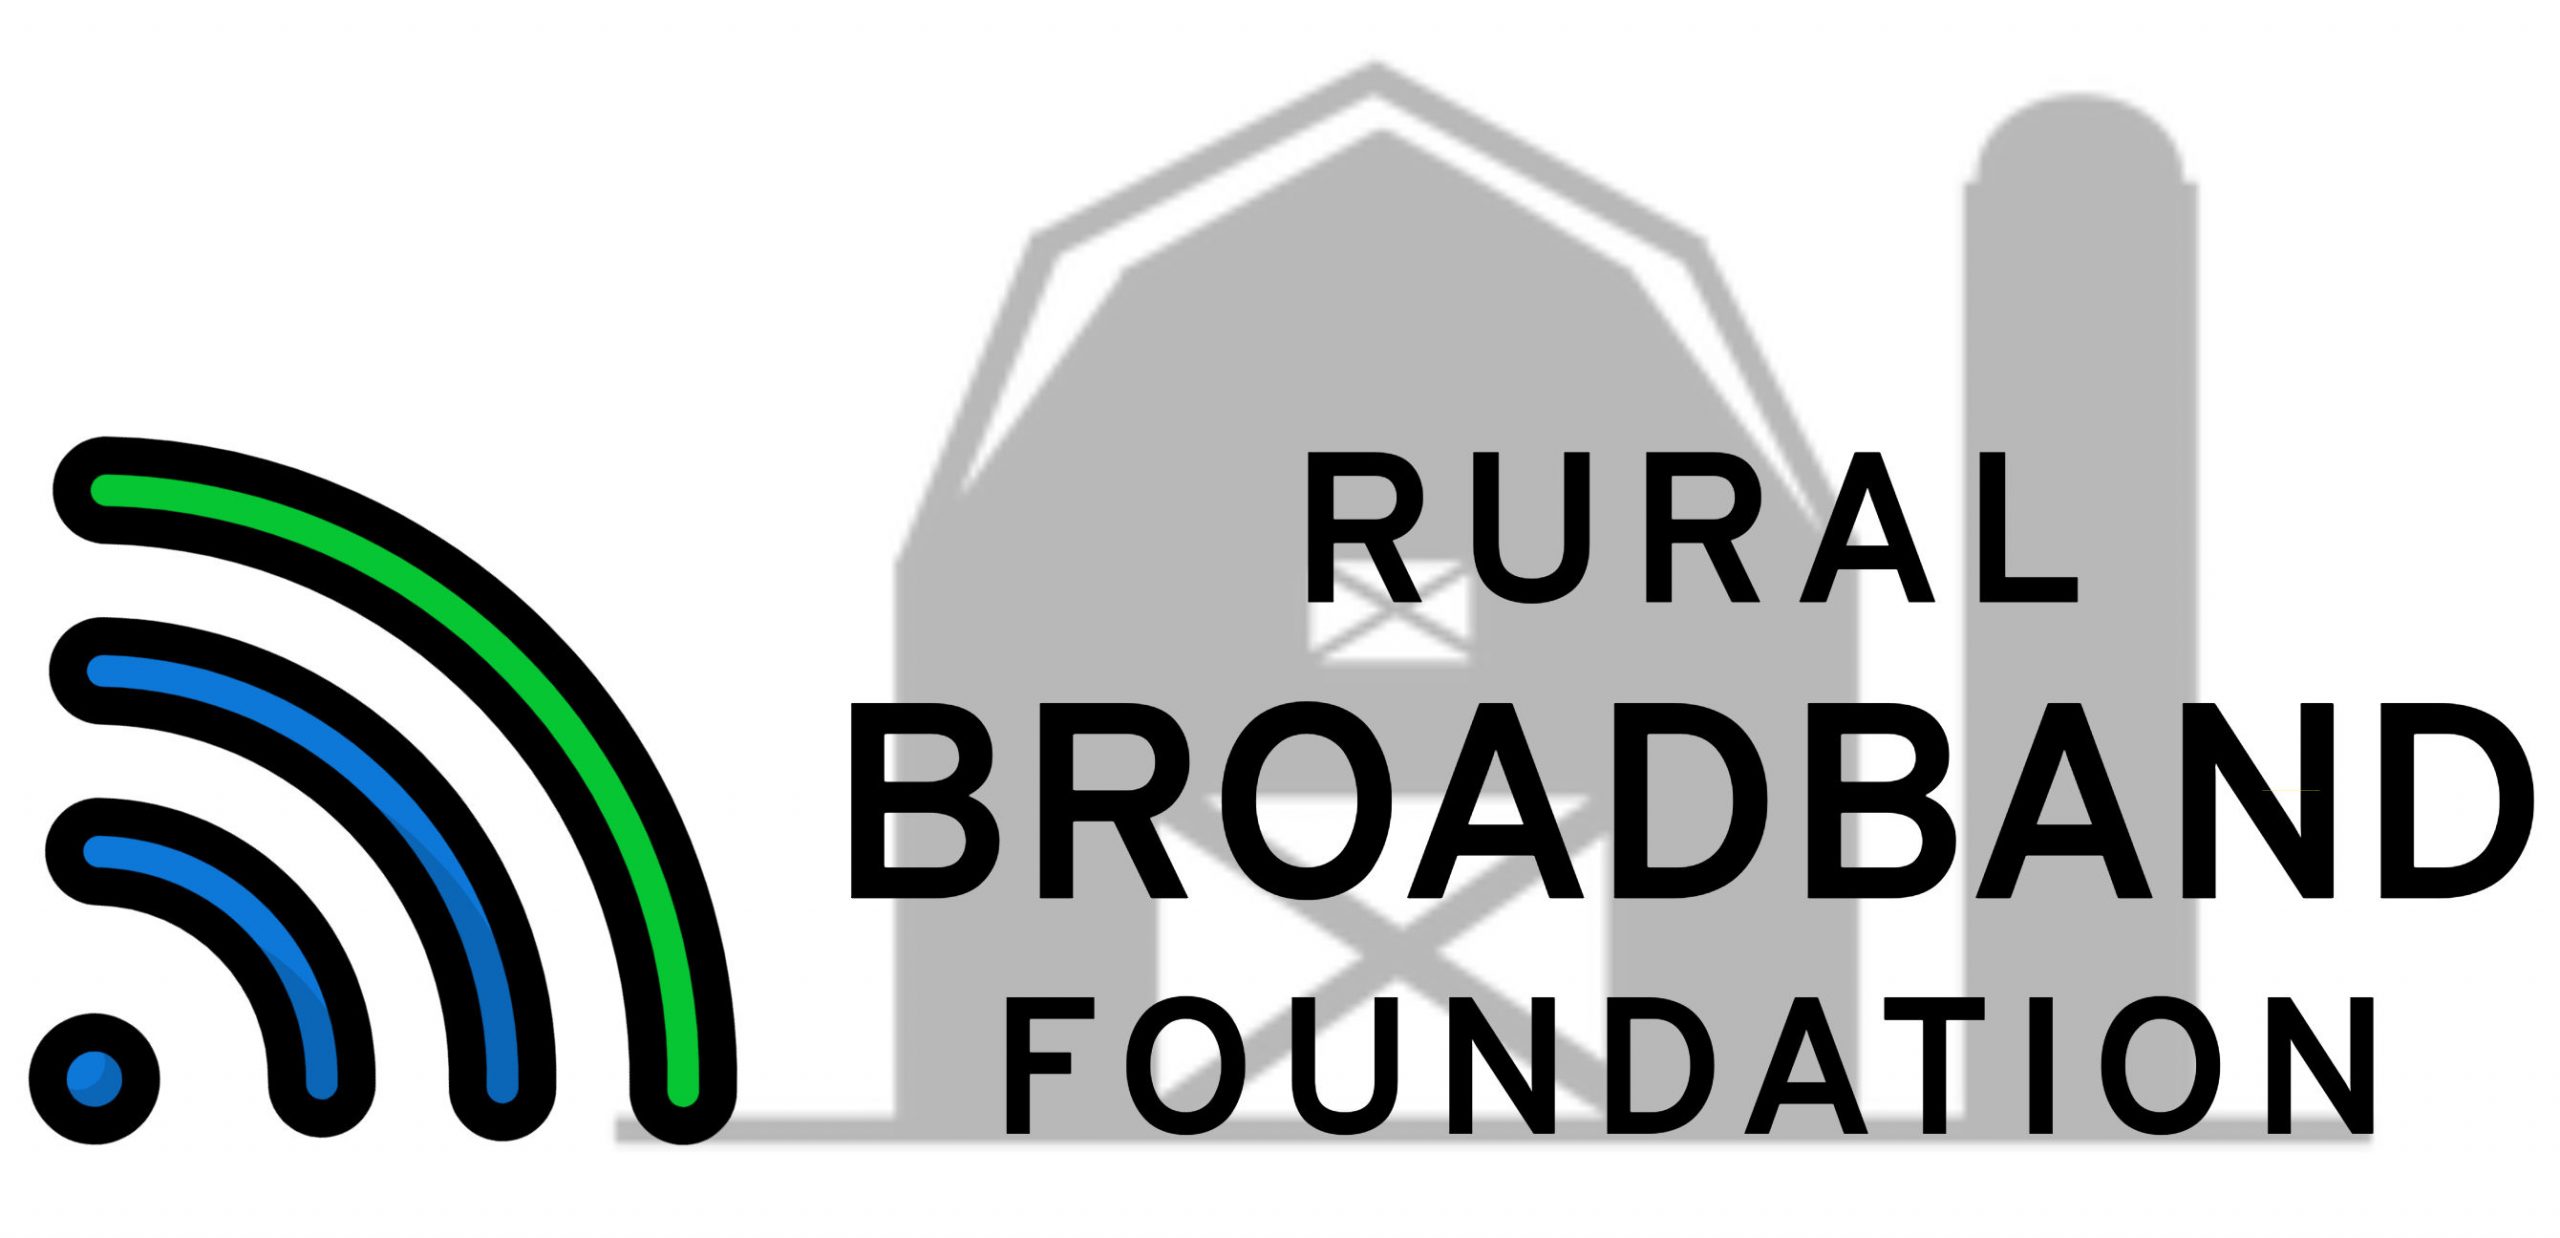 Rural Broadband Foundation